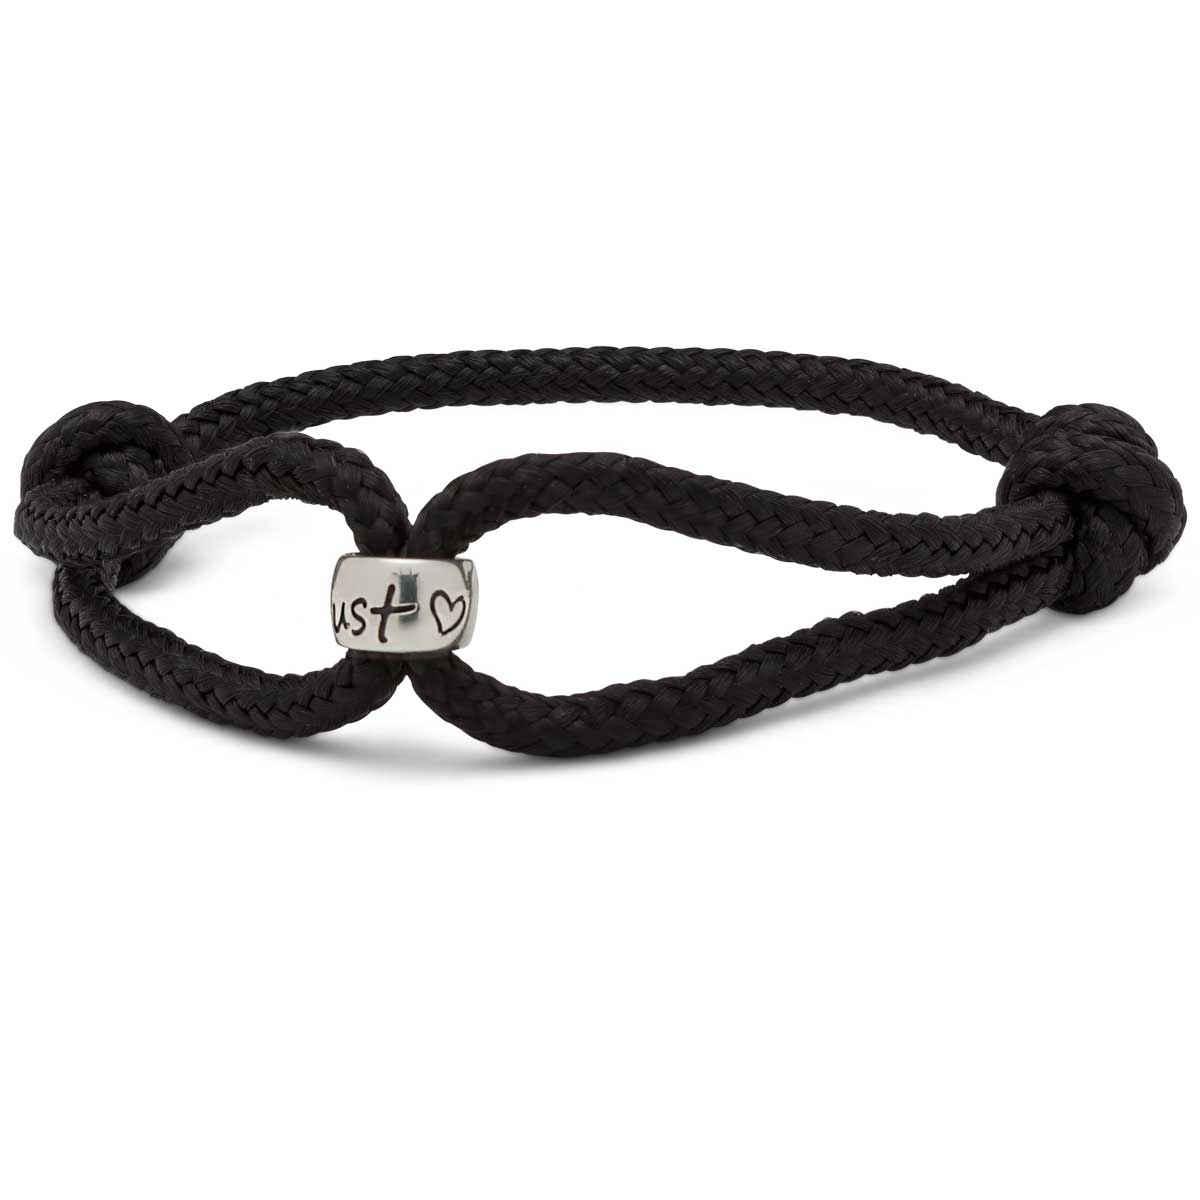 Original Wanderlust gifts for men, adjustable vegan cord bracelet in black